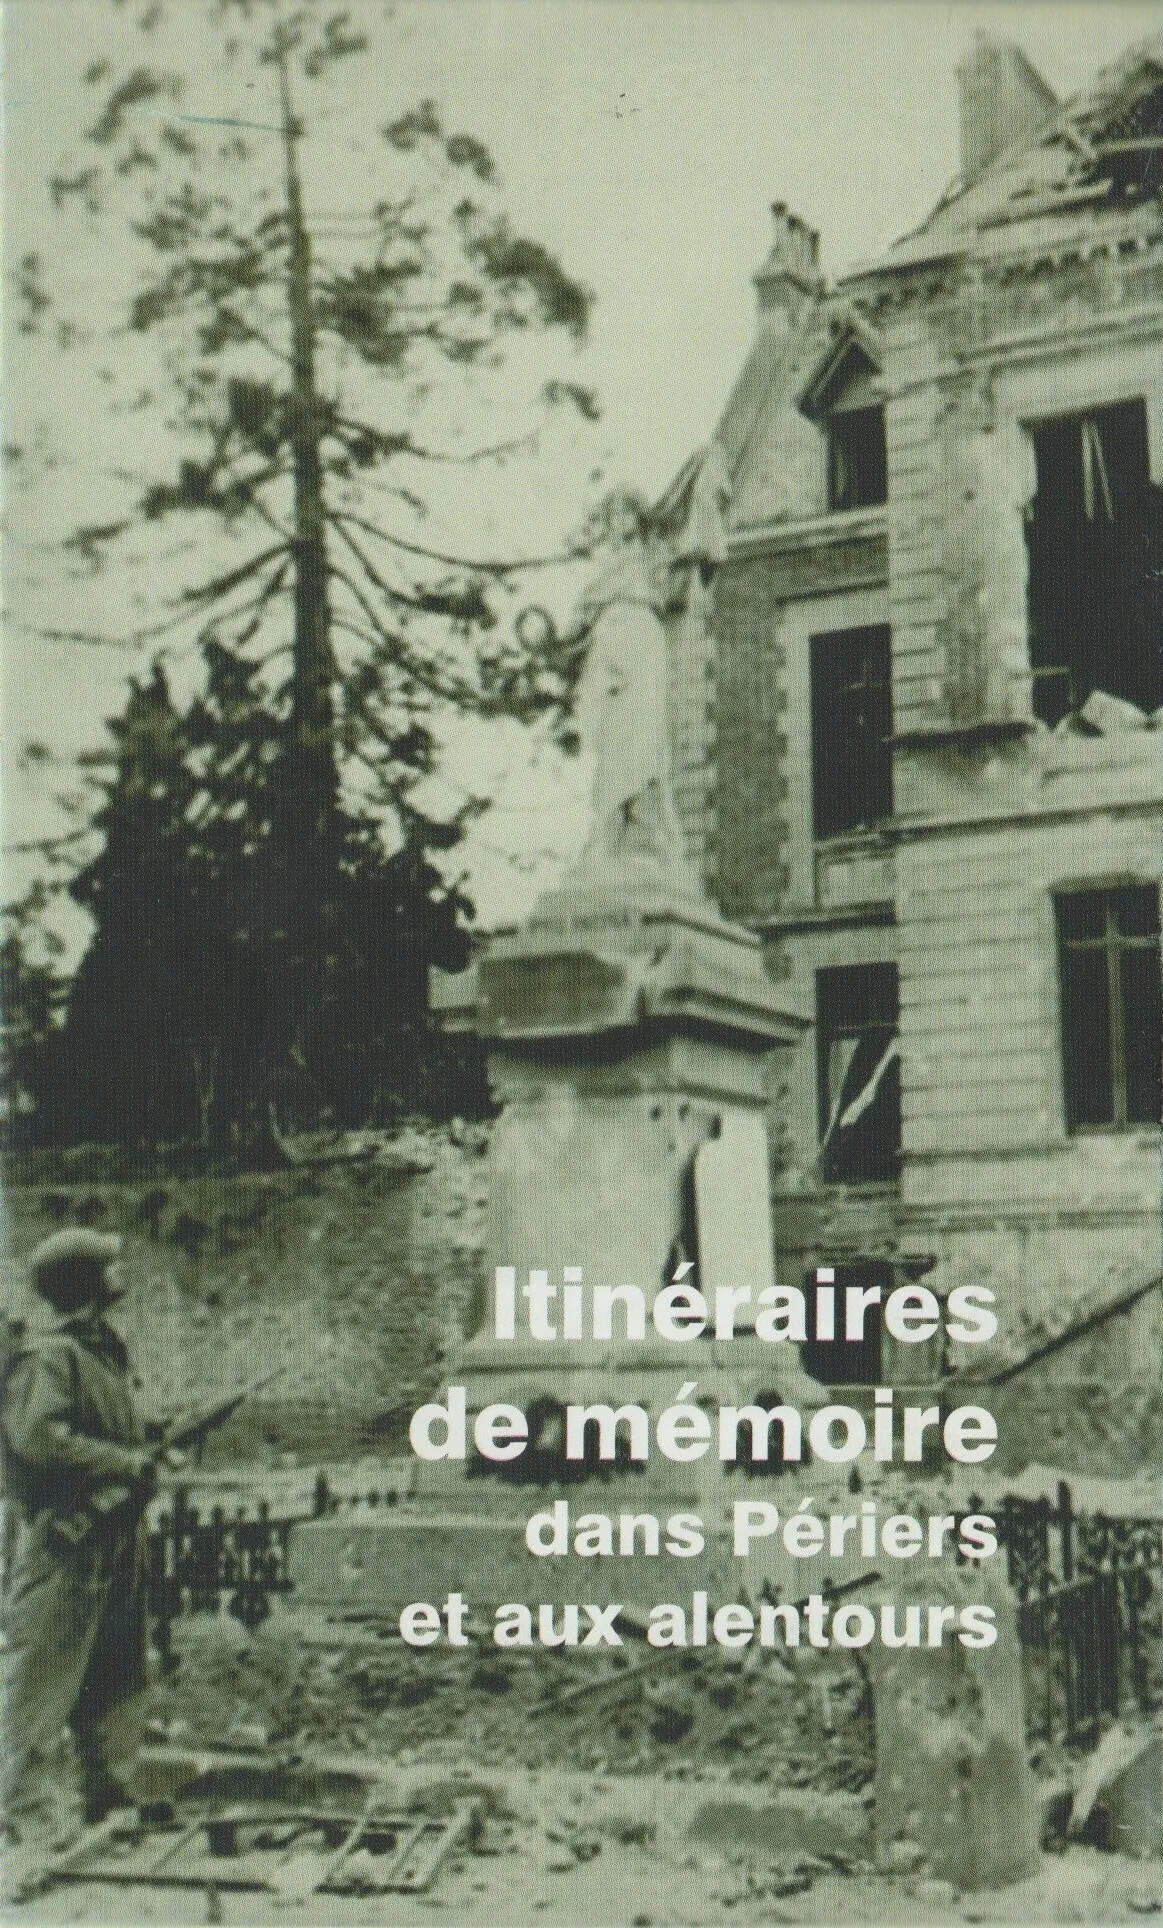 Image qui illustre: Visite guidée : itinéraires de mémoire dans Périers et aux alentours à Périers - 0